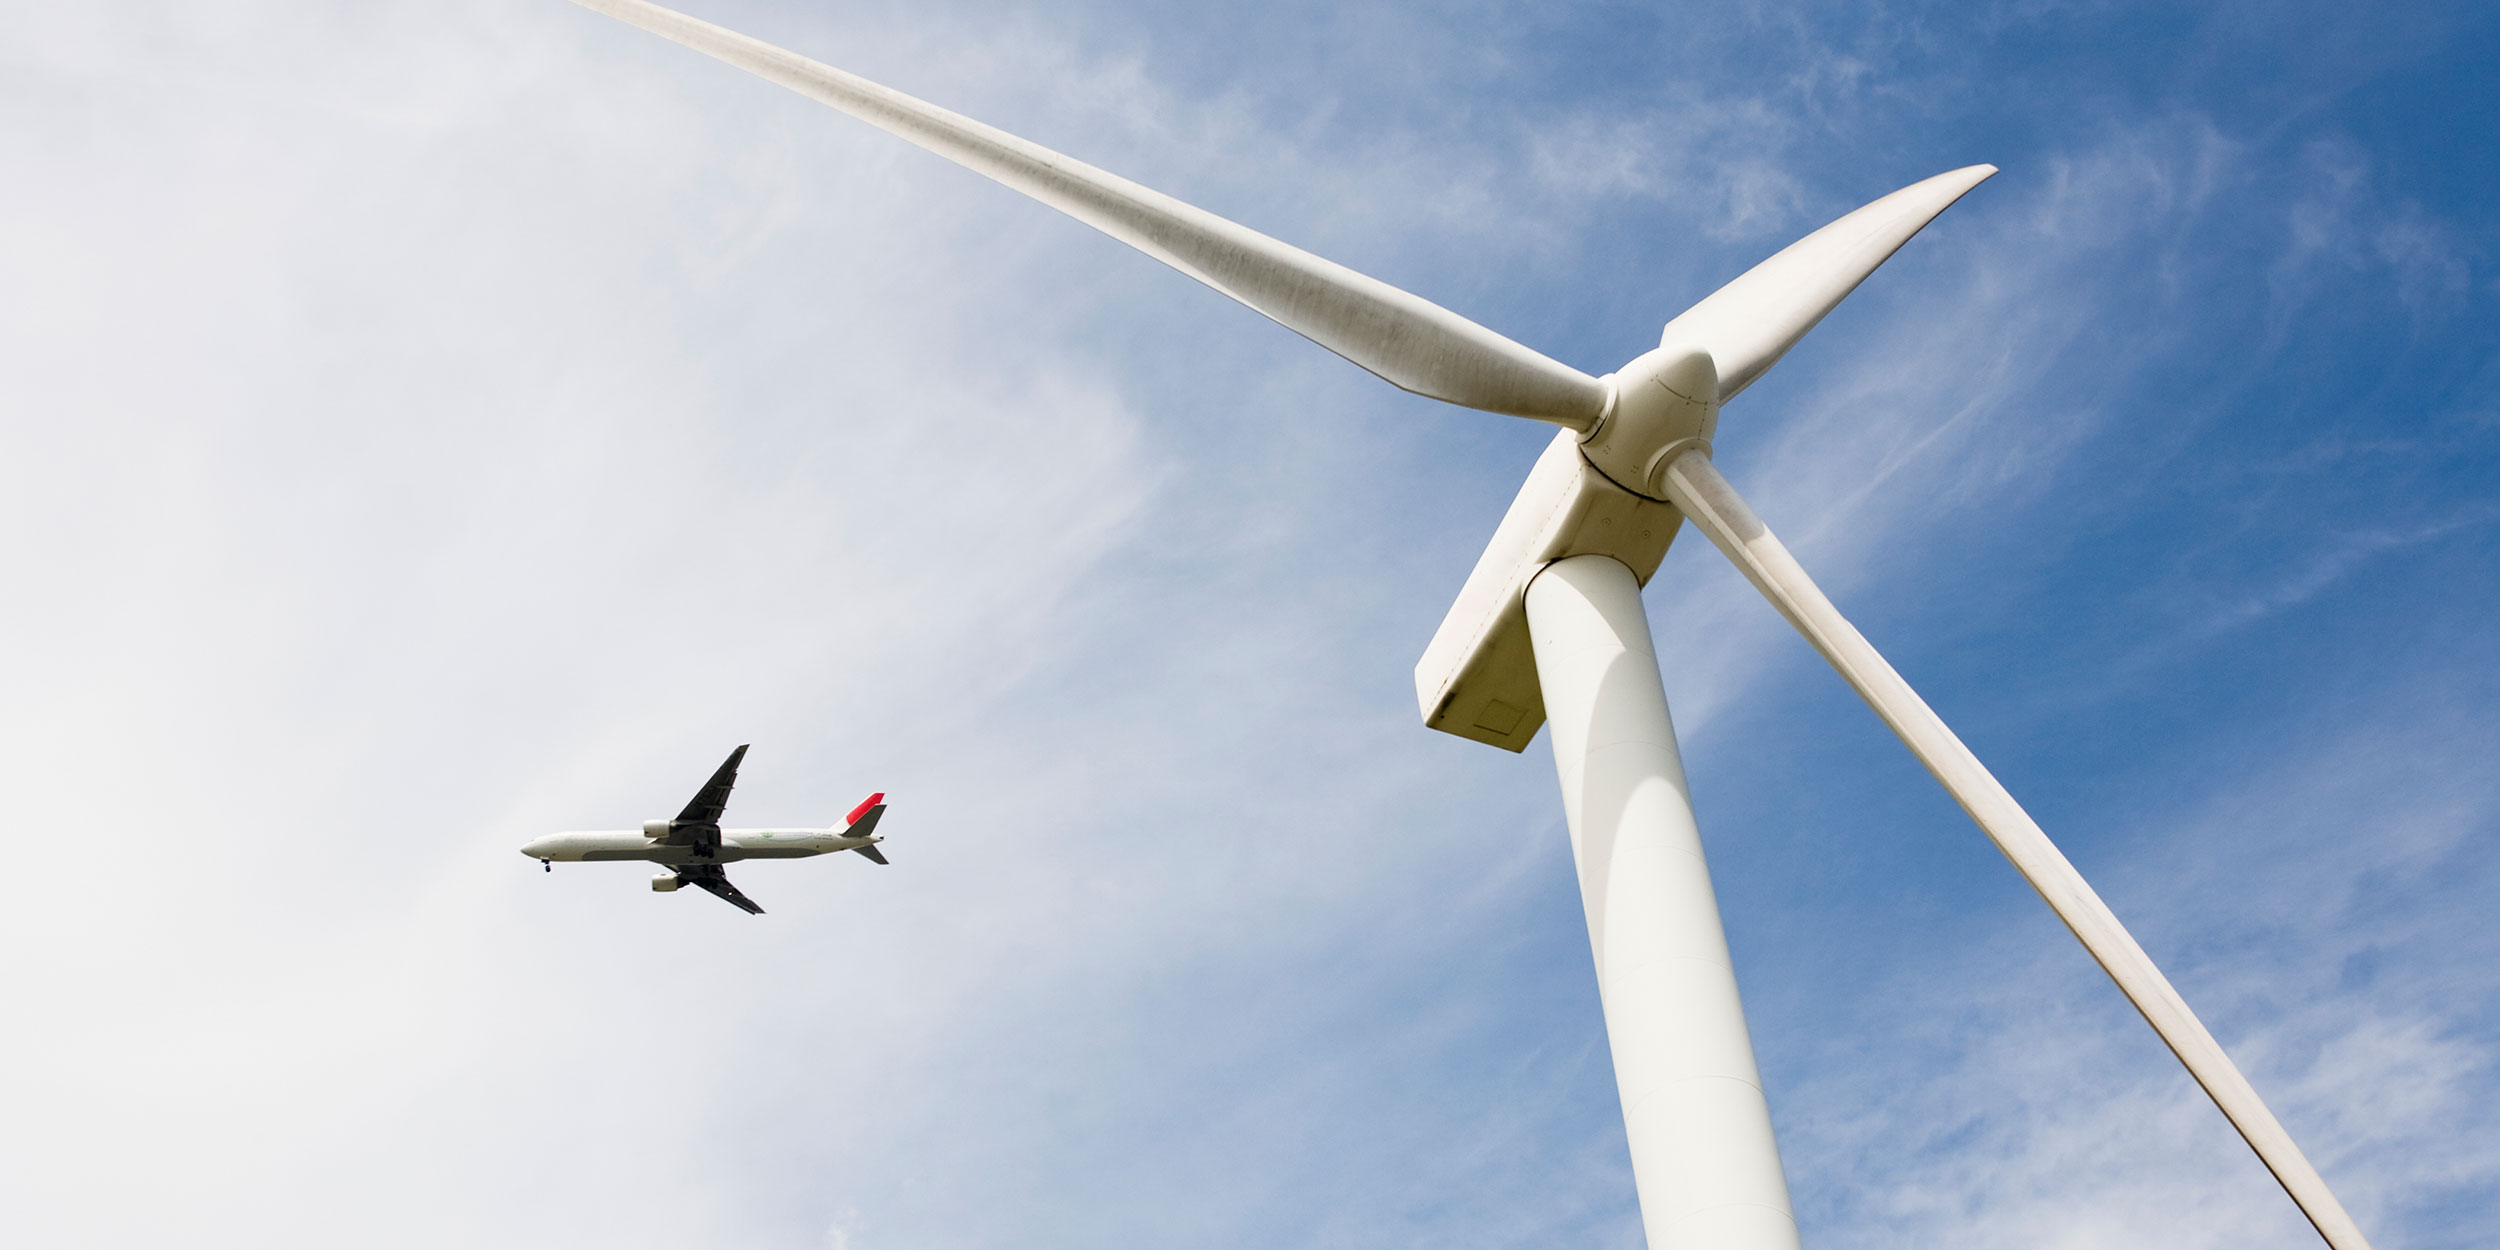 plane and wind turbine